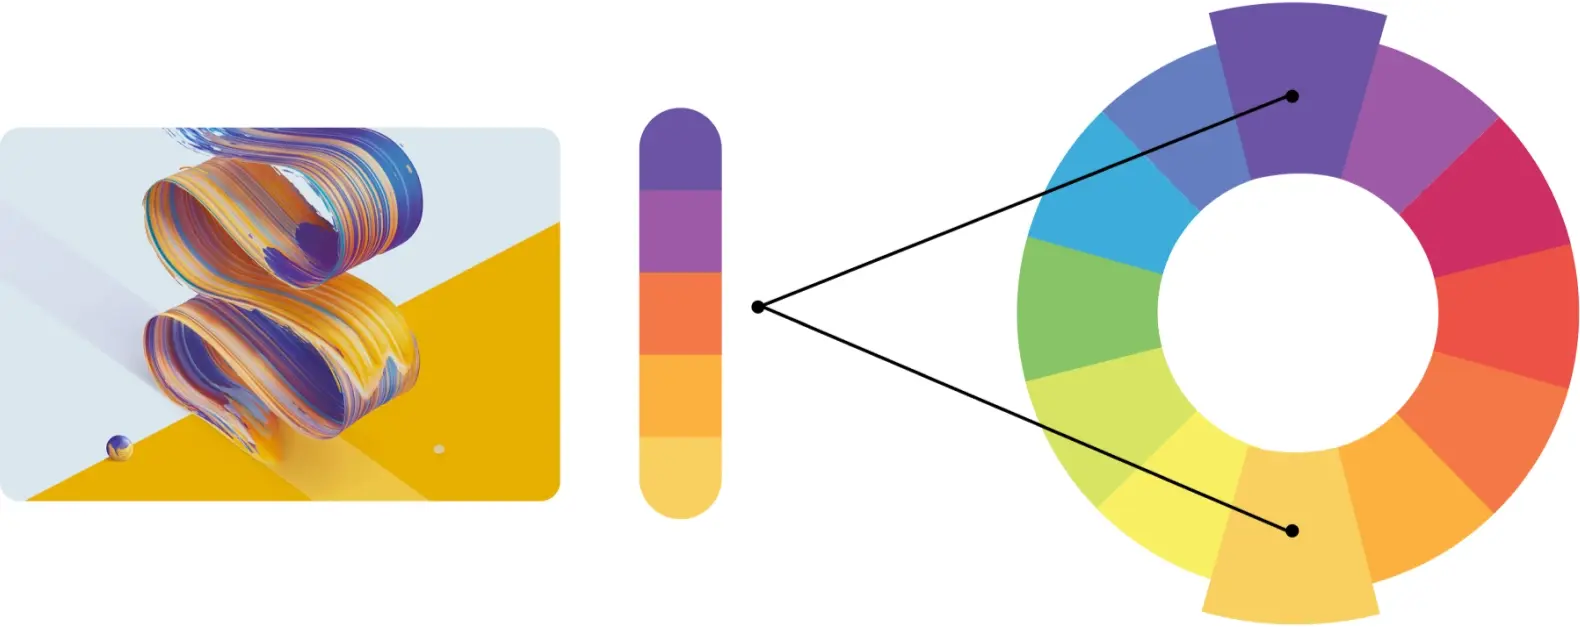 Exemple de palette de couleurs créée à l’aide de couleurs complémentaires sur la roulette de couleurs.